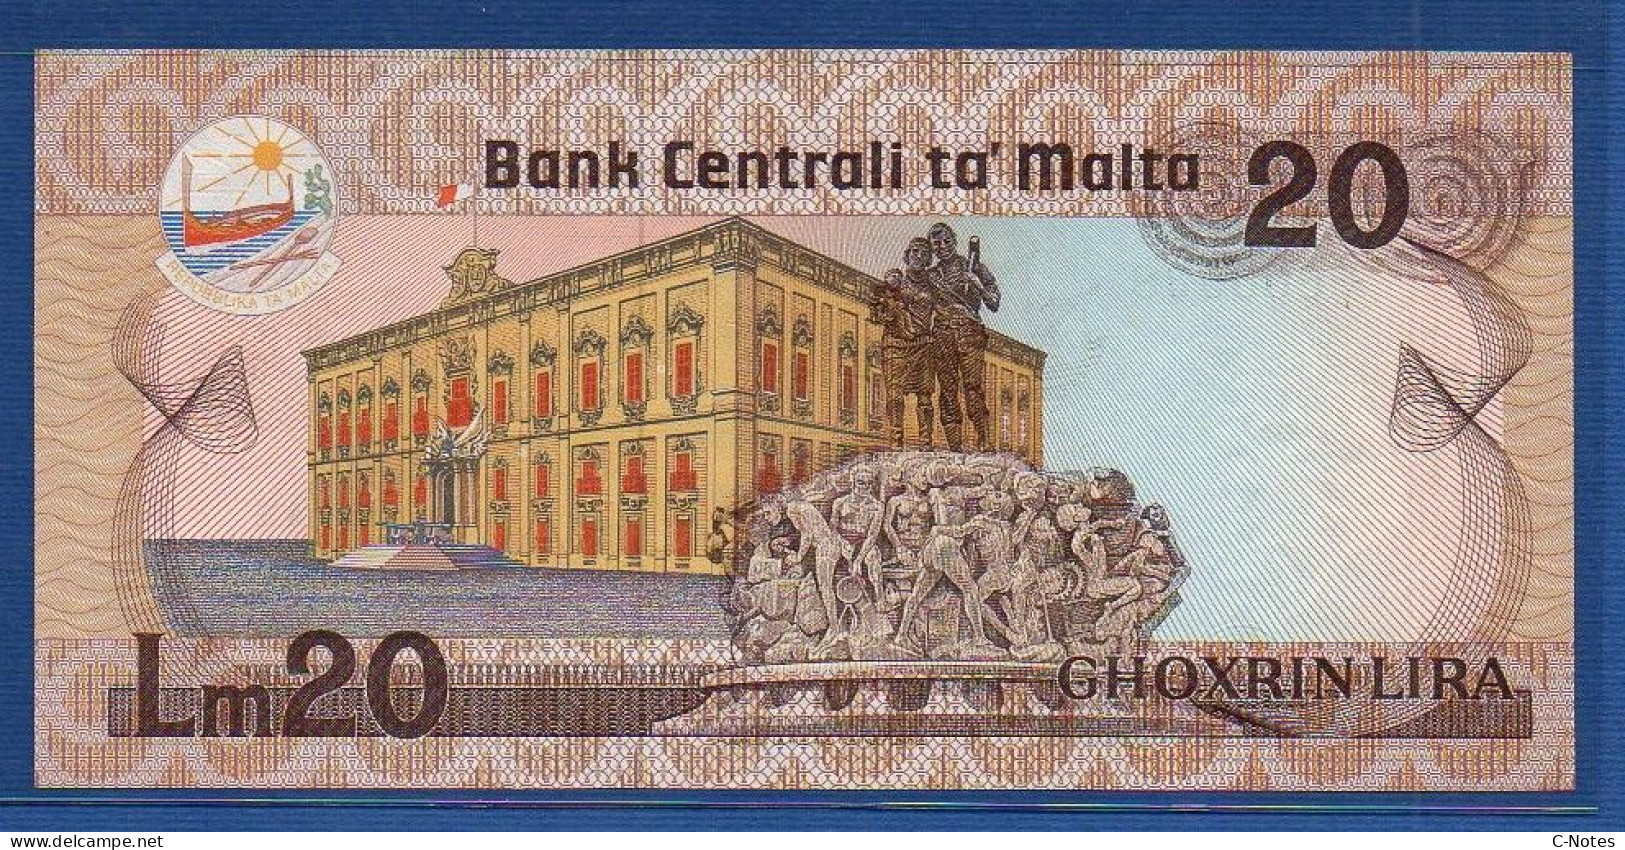 MALTA - P.40 – 20 Liri L. 1967 (1986) UNC, S/n D/I 000338 "Agata Barbara" Issue  - LOW NUMBER - Malta